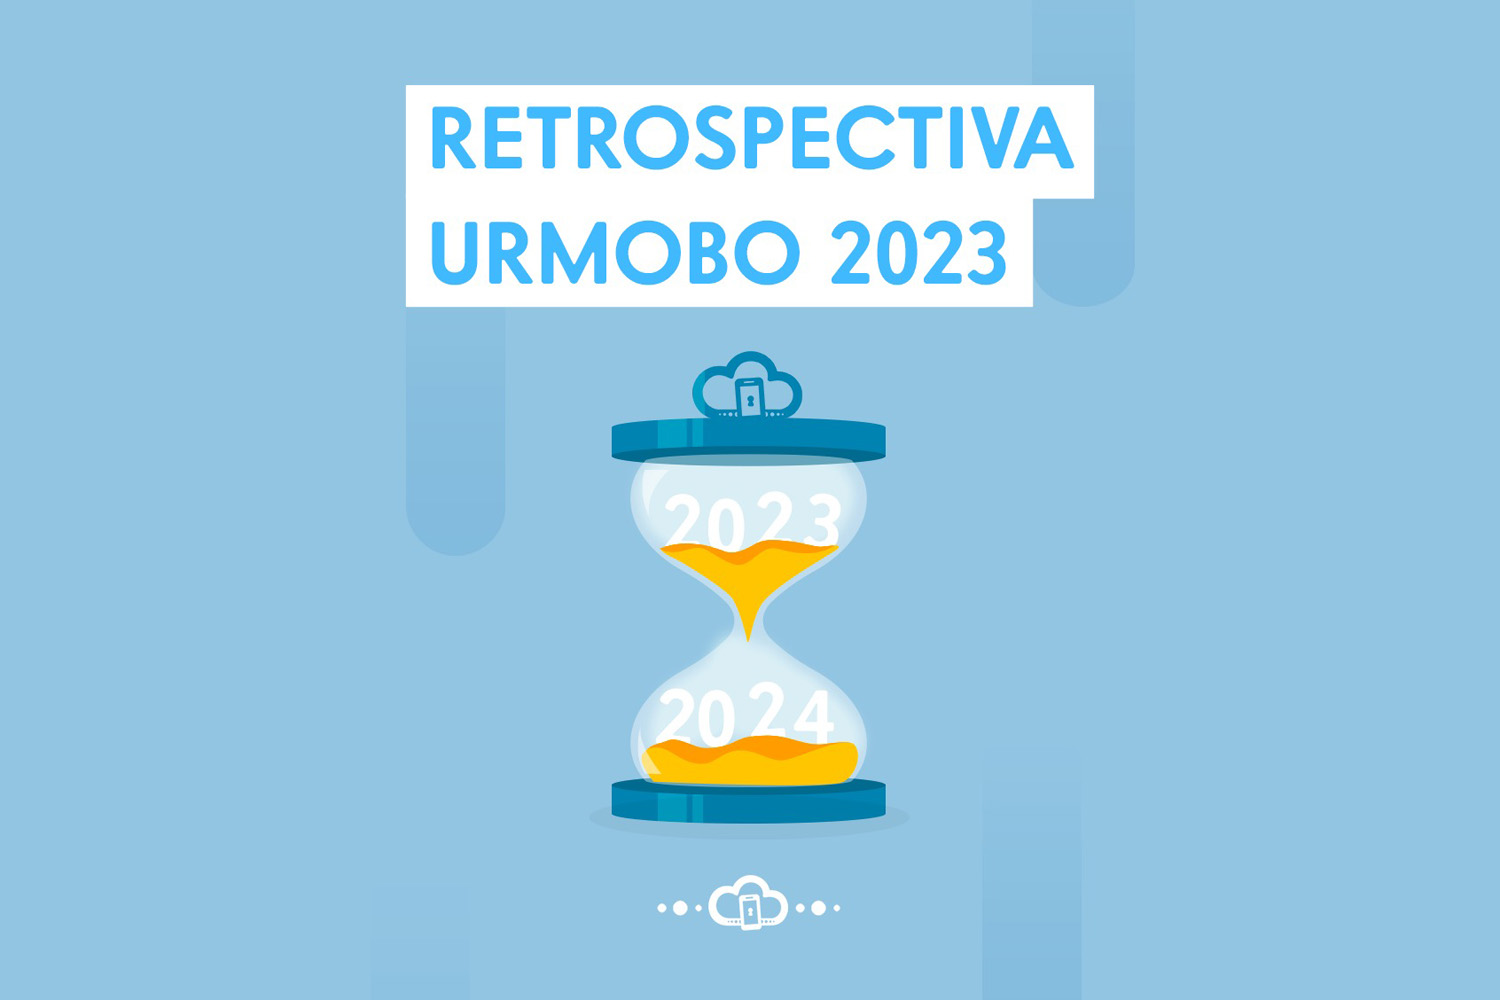 Retrospectiva Urmobo 2023: Conquistas, desafios e resultados de negócio